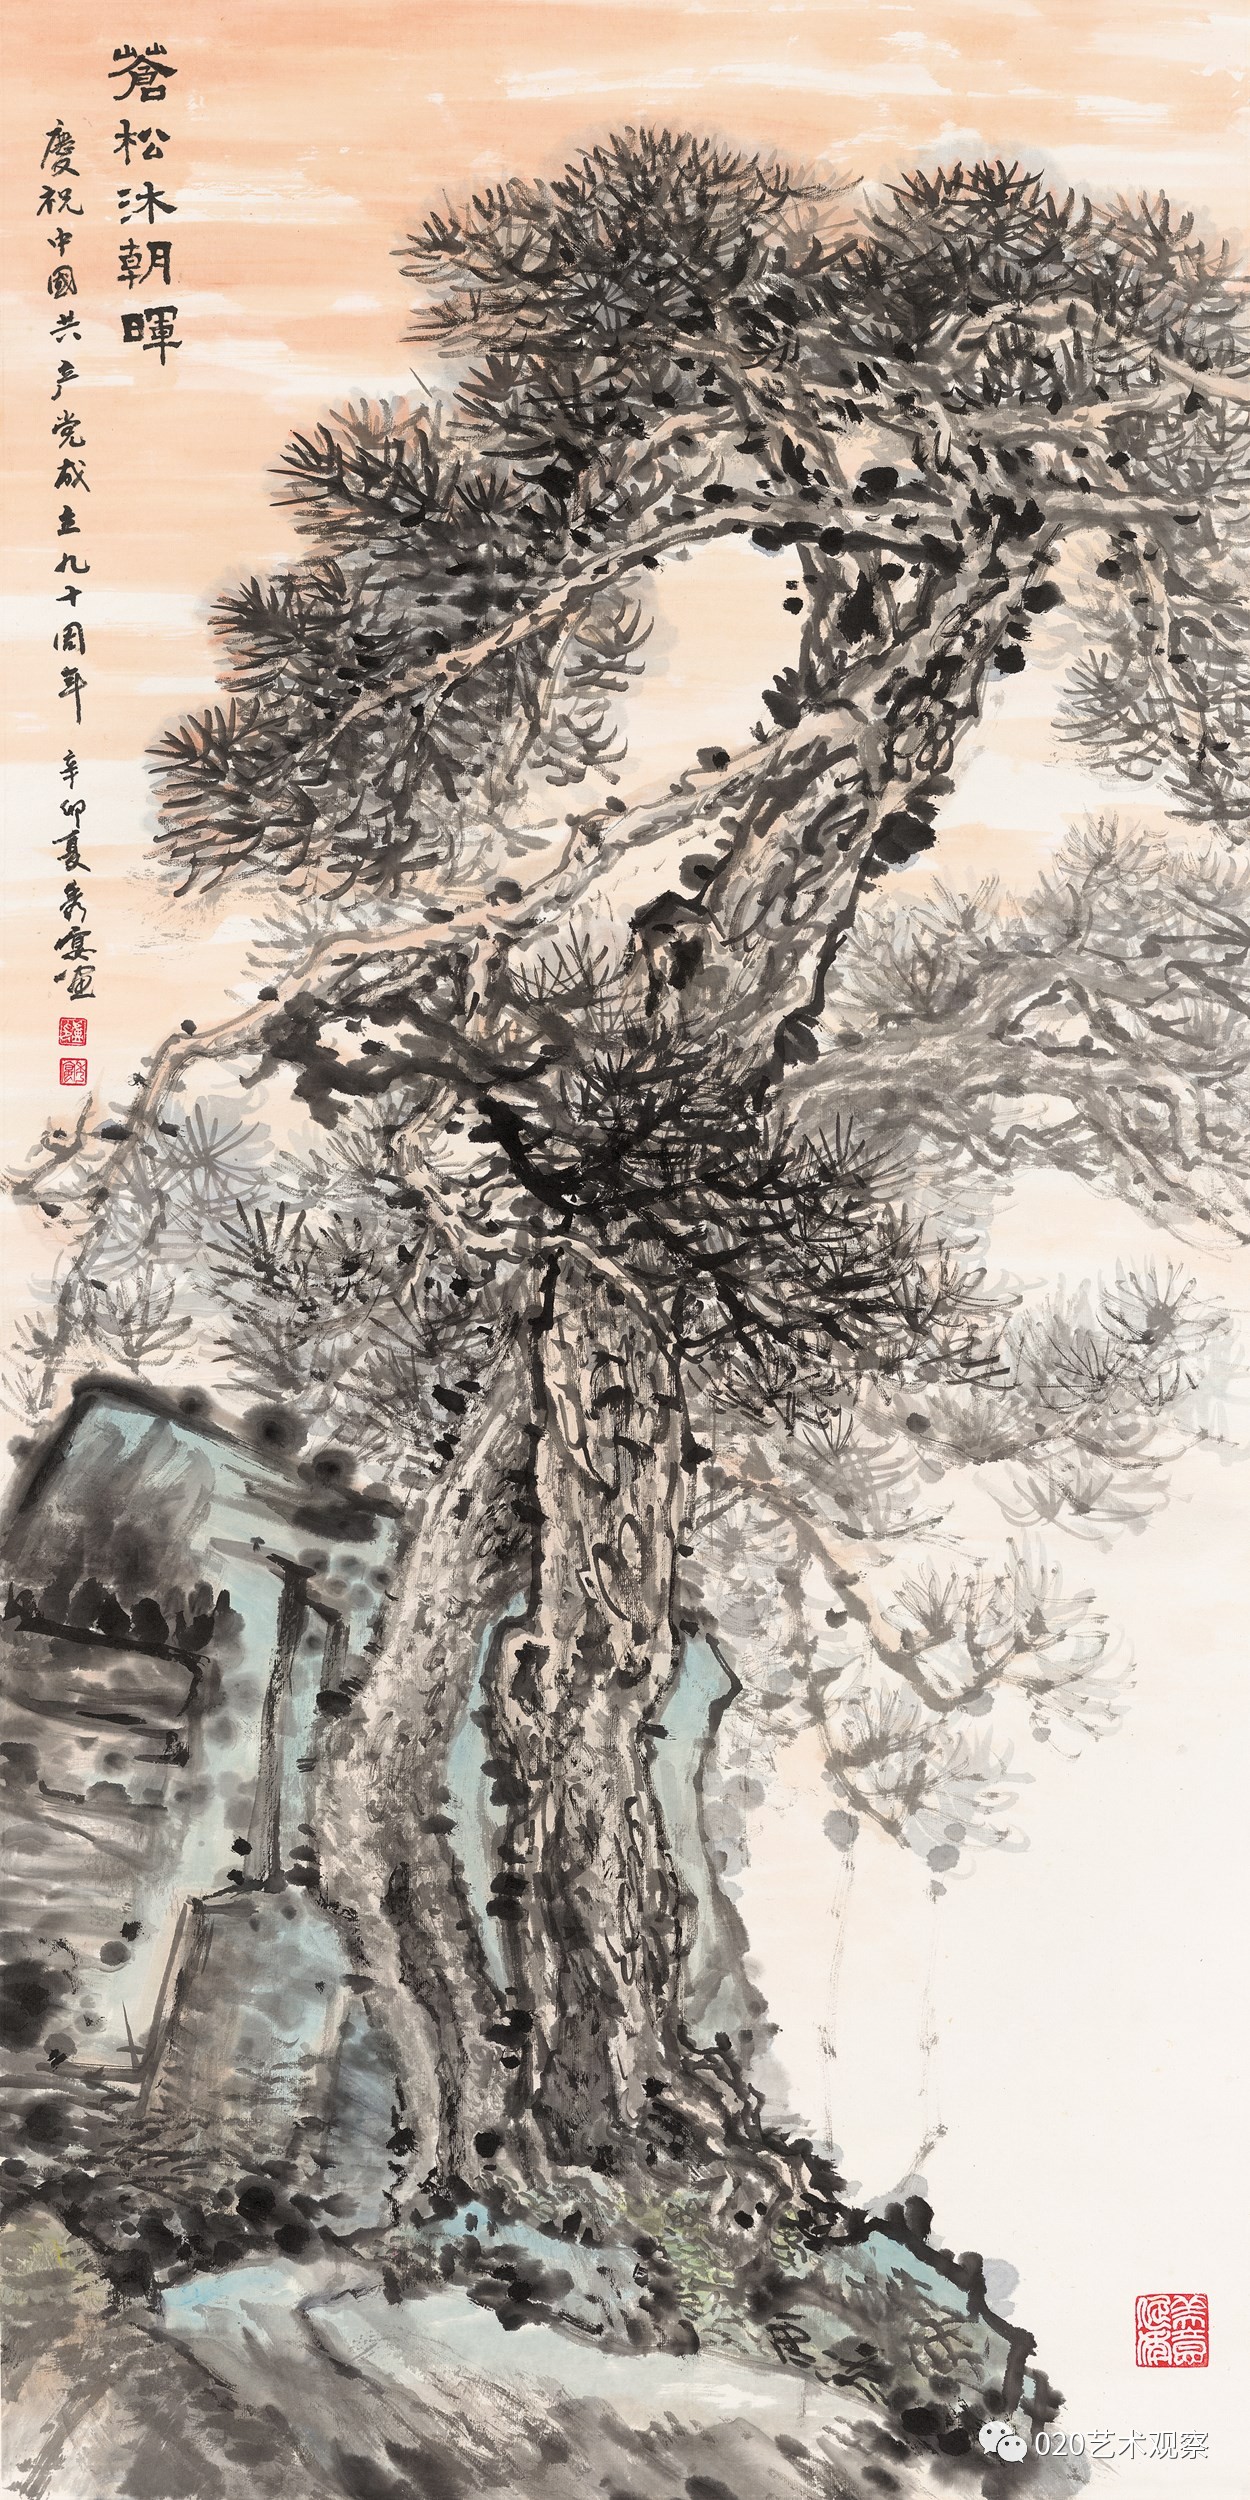 岭南树格61国画名家笔下的树作品展全集